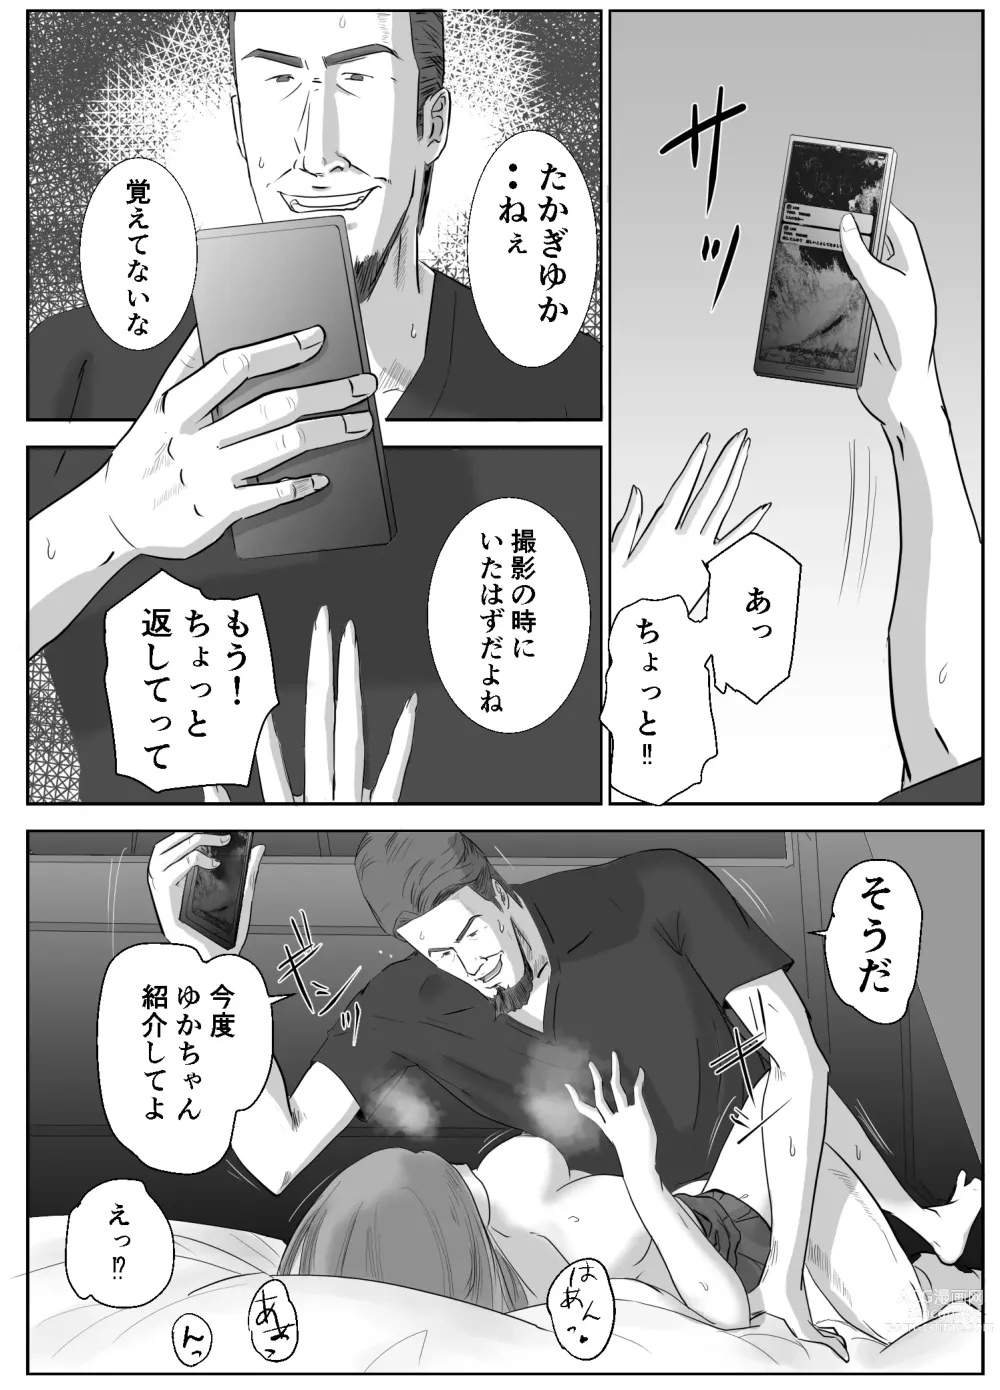 Page 25 of doujinshi Ano Hi no Uso 2 ~Yuka~